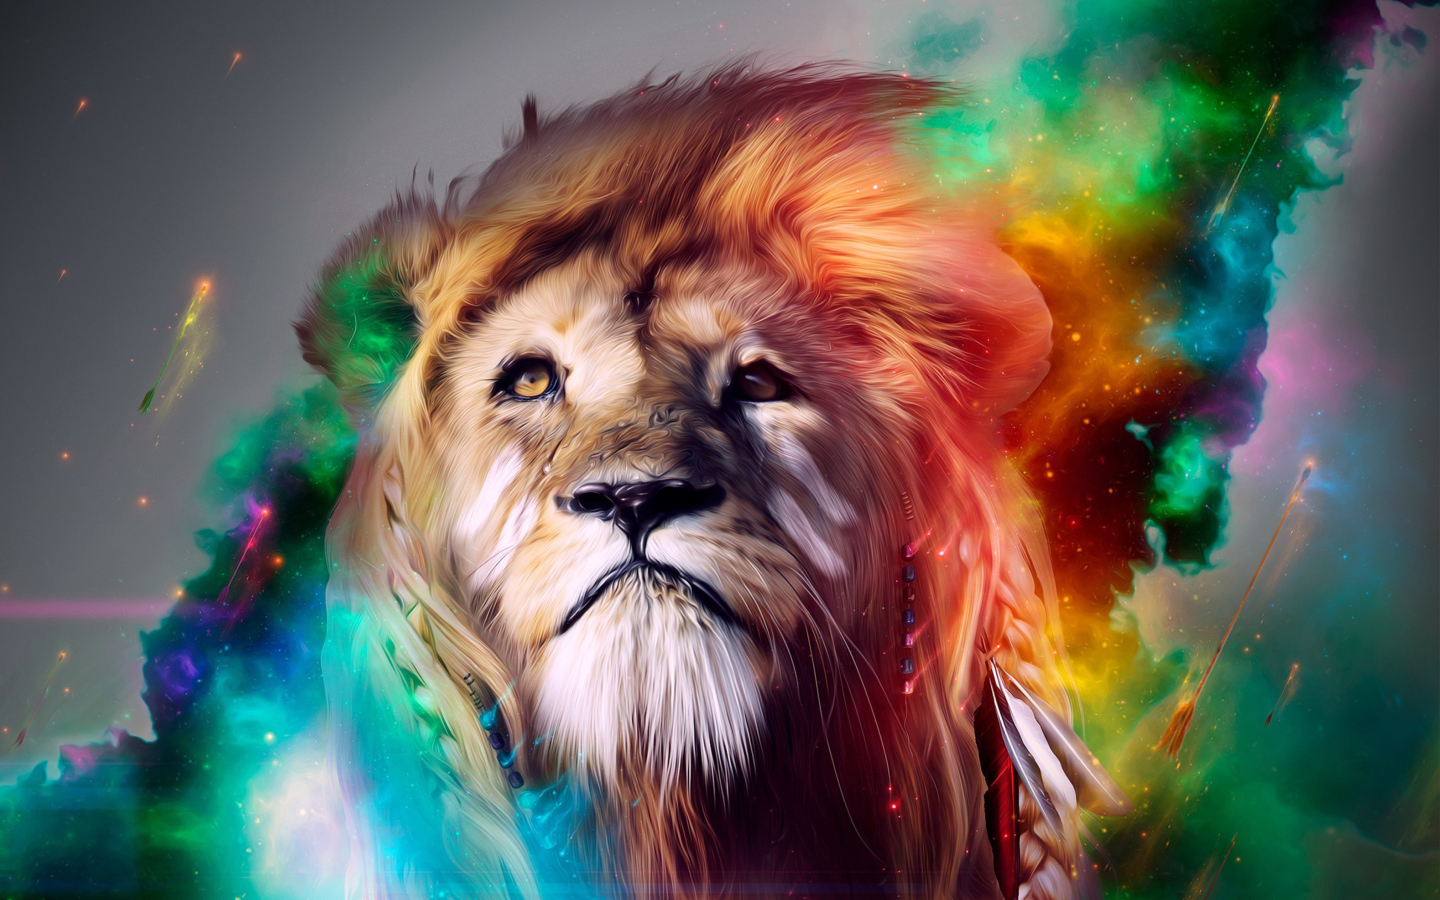 Lion Art wallpaper 1440x900